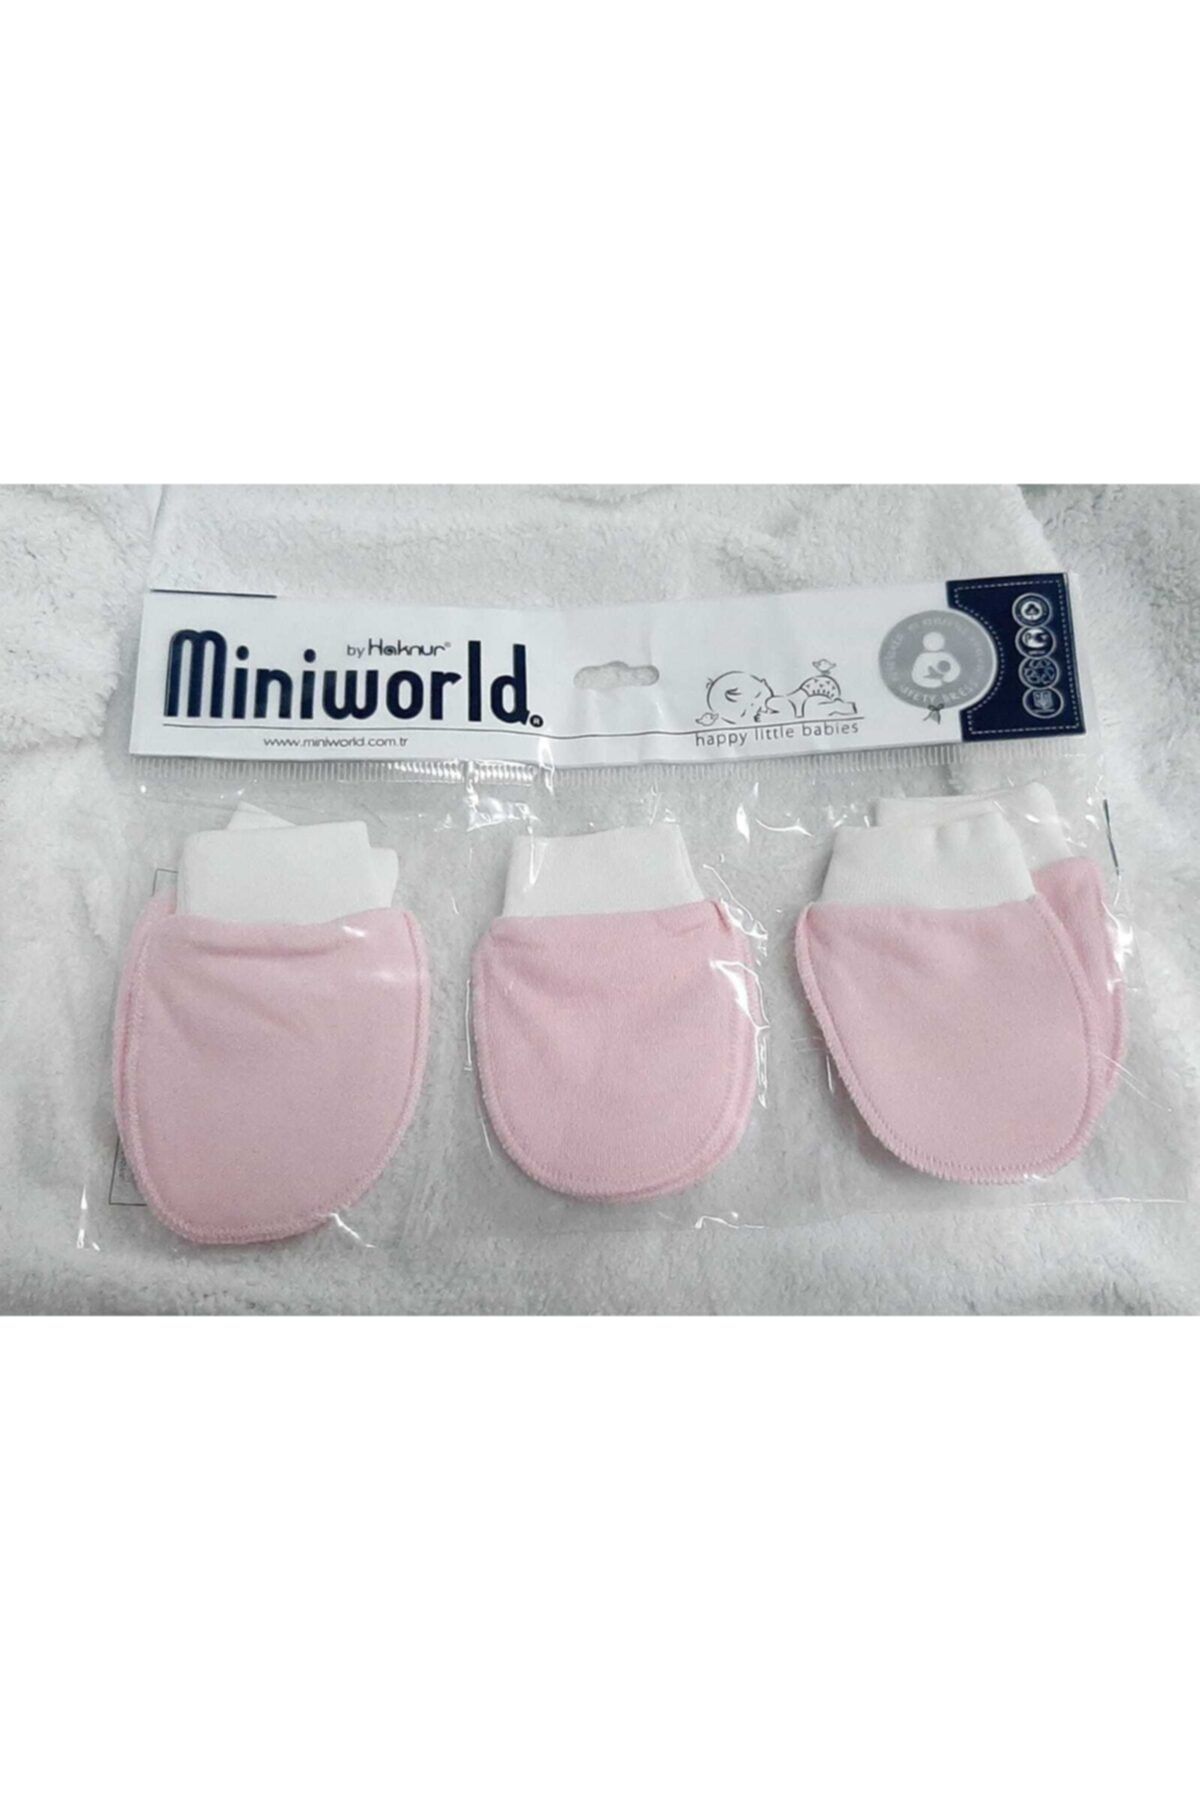 Miniworld 3 Çift Tek Renk Bebek Eldiveni